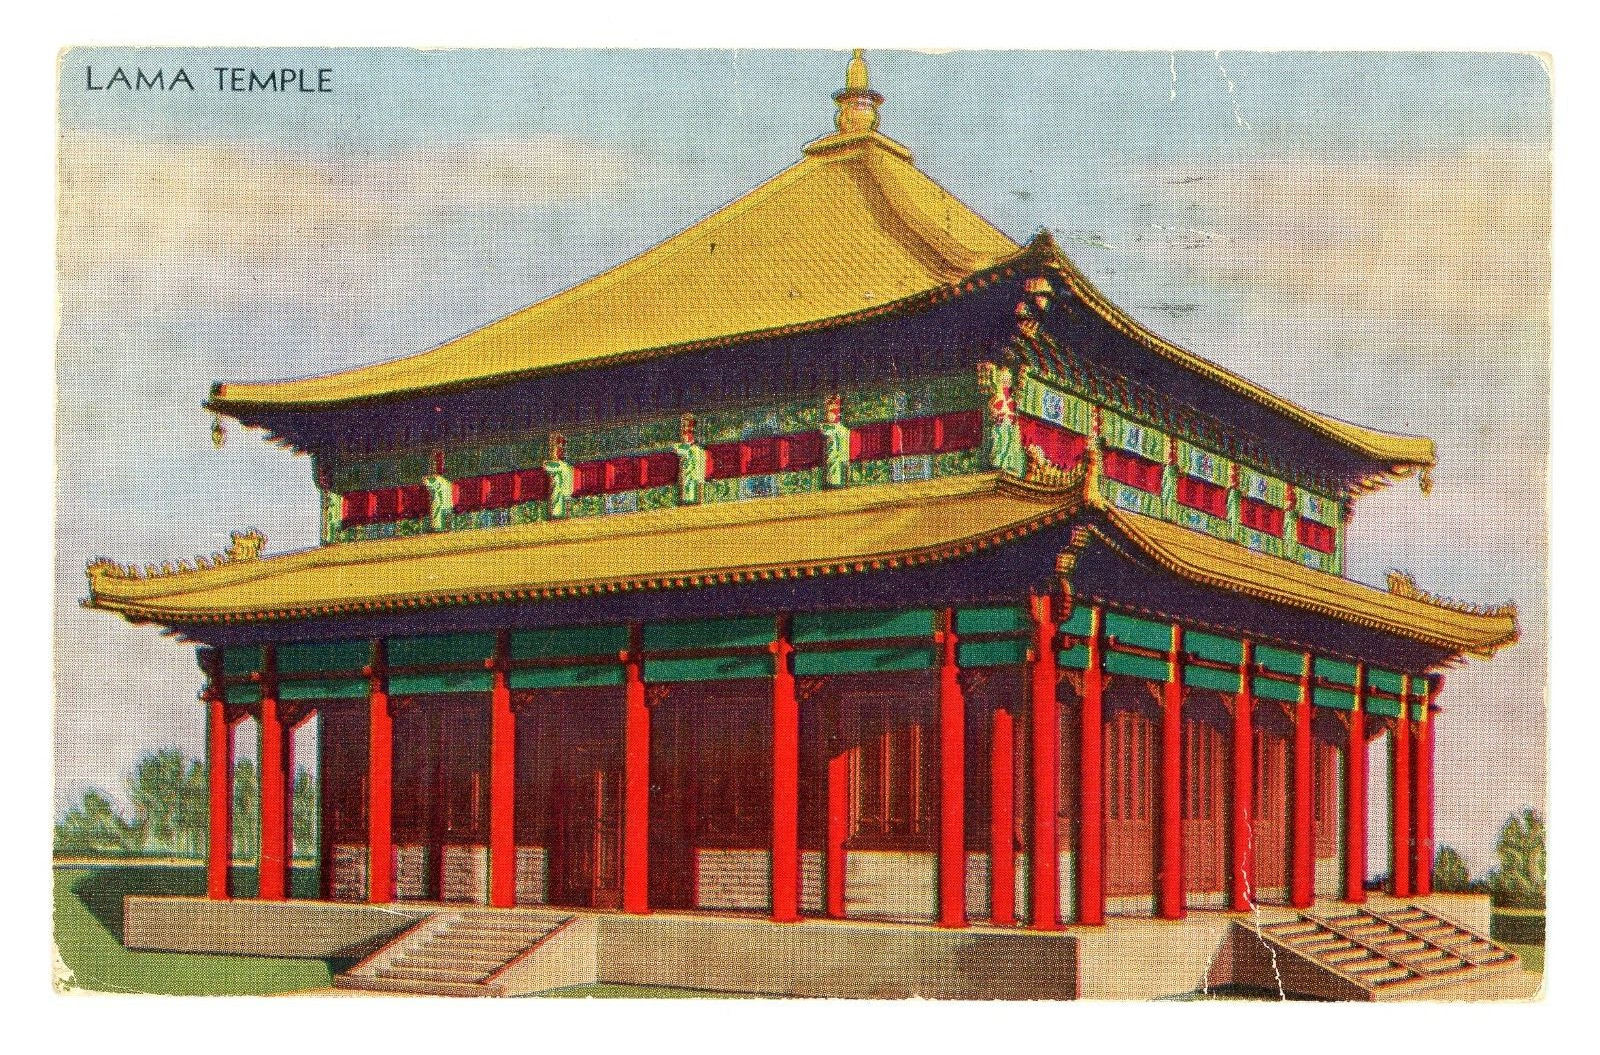 Postcard IL Lama Temple Chicago Illinois 1933 World's Fair Century of Progress